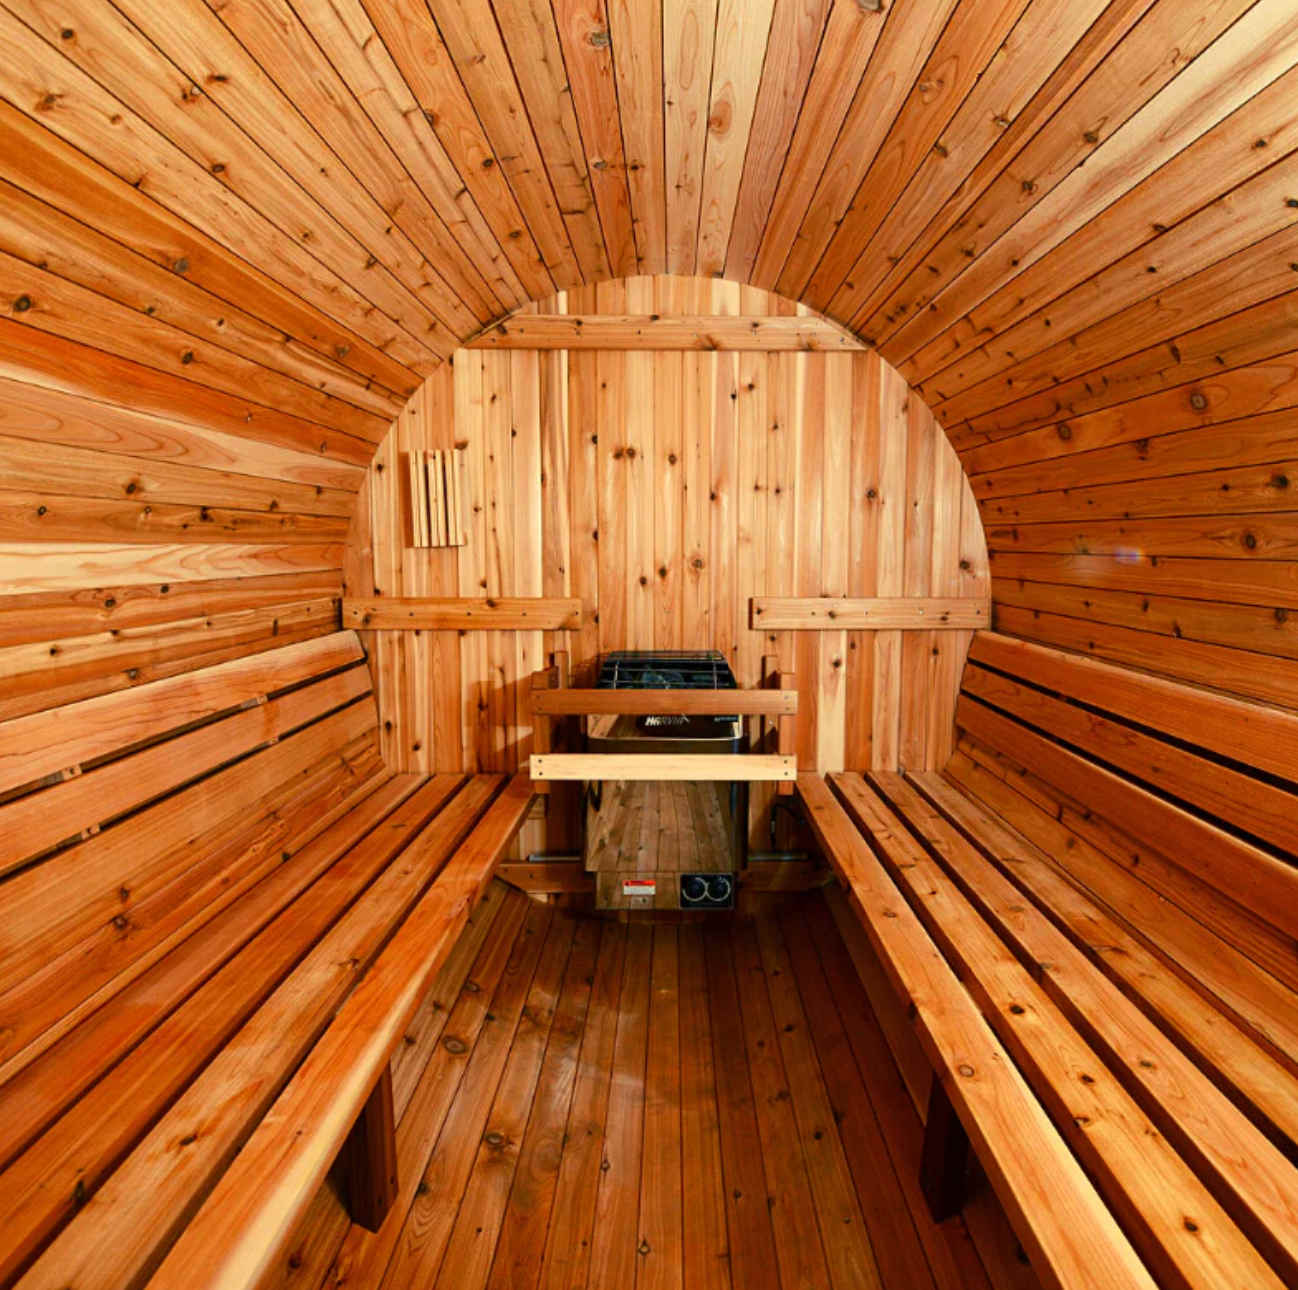 Almost Heaven Salem 2 person Barrel Sauna - sauna interior